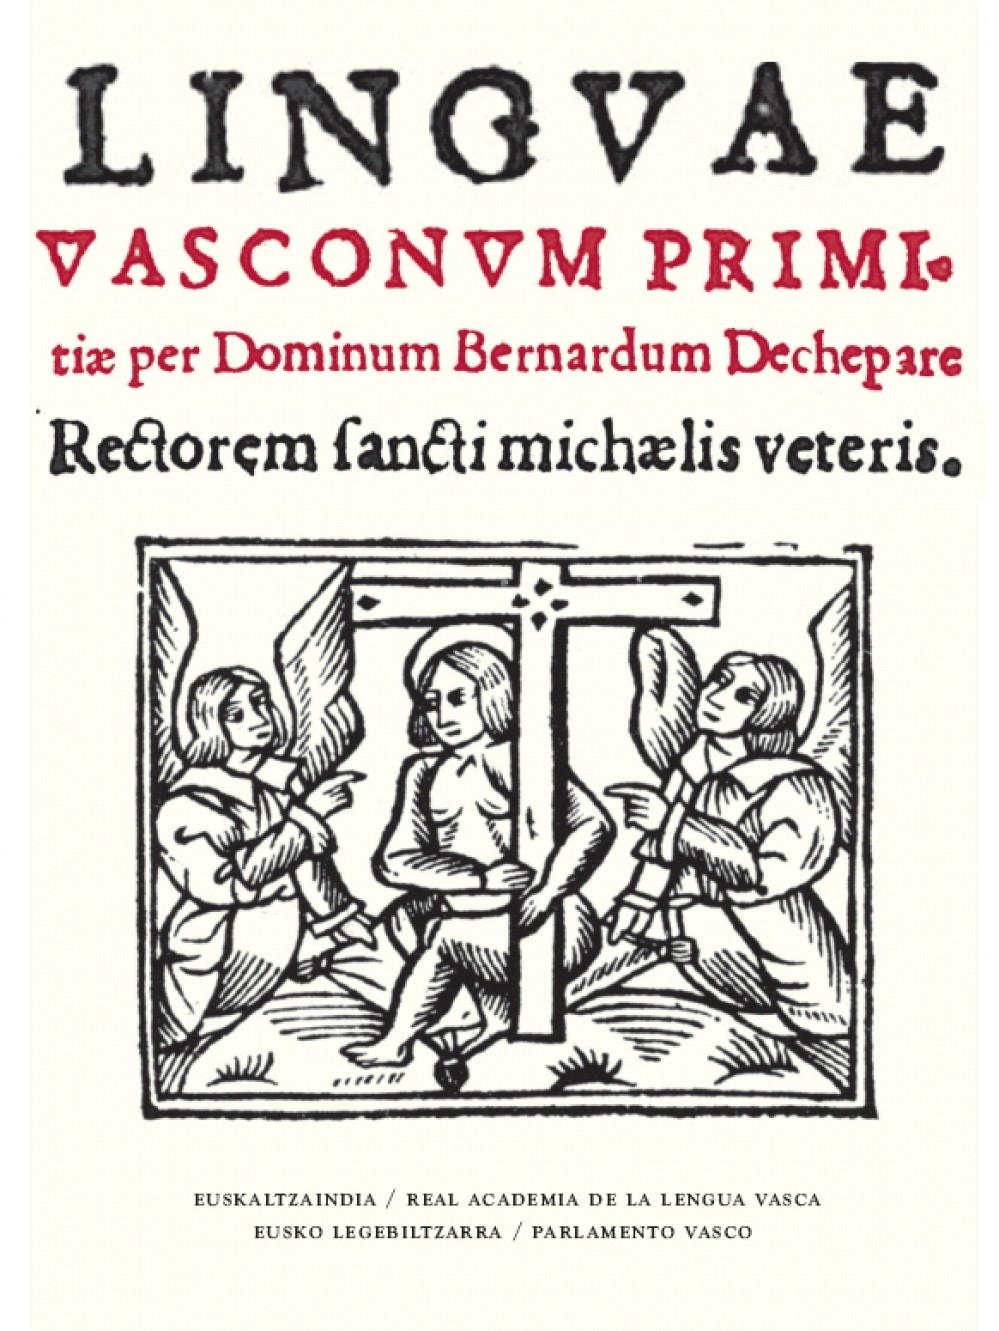 Linguae Vasconum Primitiae (Basque language, 1545)